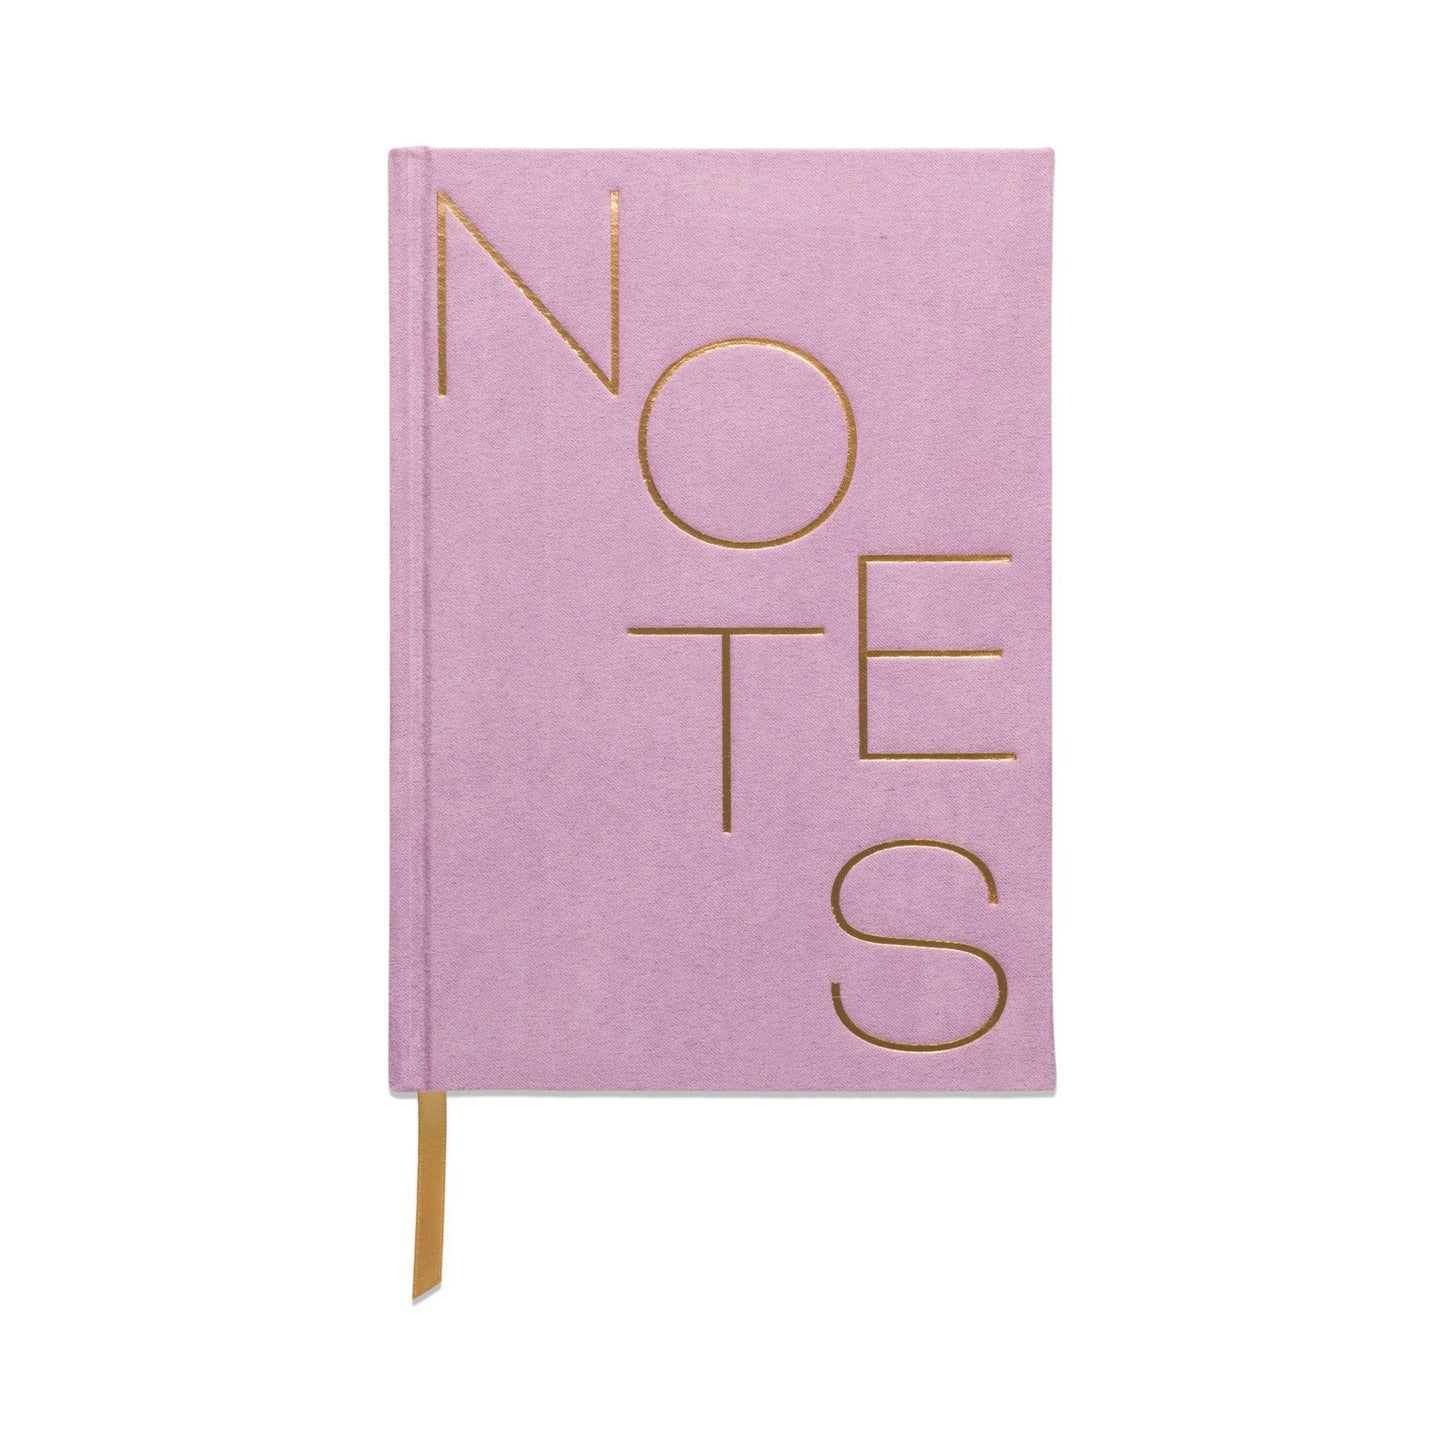 Designworks Ink - 'Lilac' Suede-Cloth Journal w/ Pocket Notes